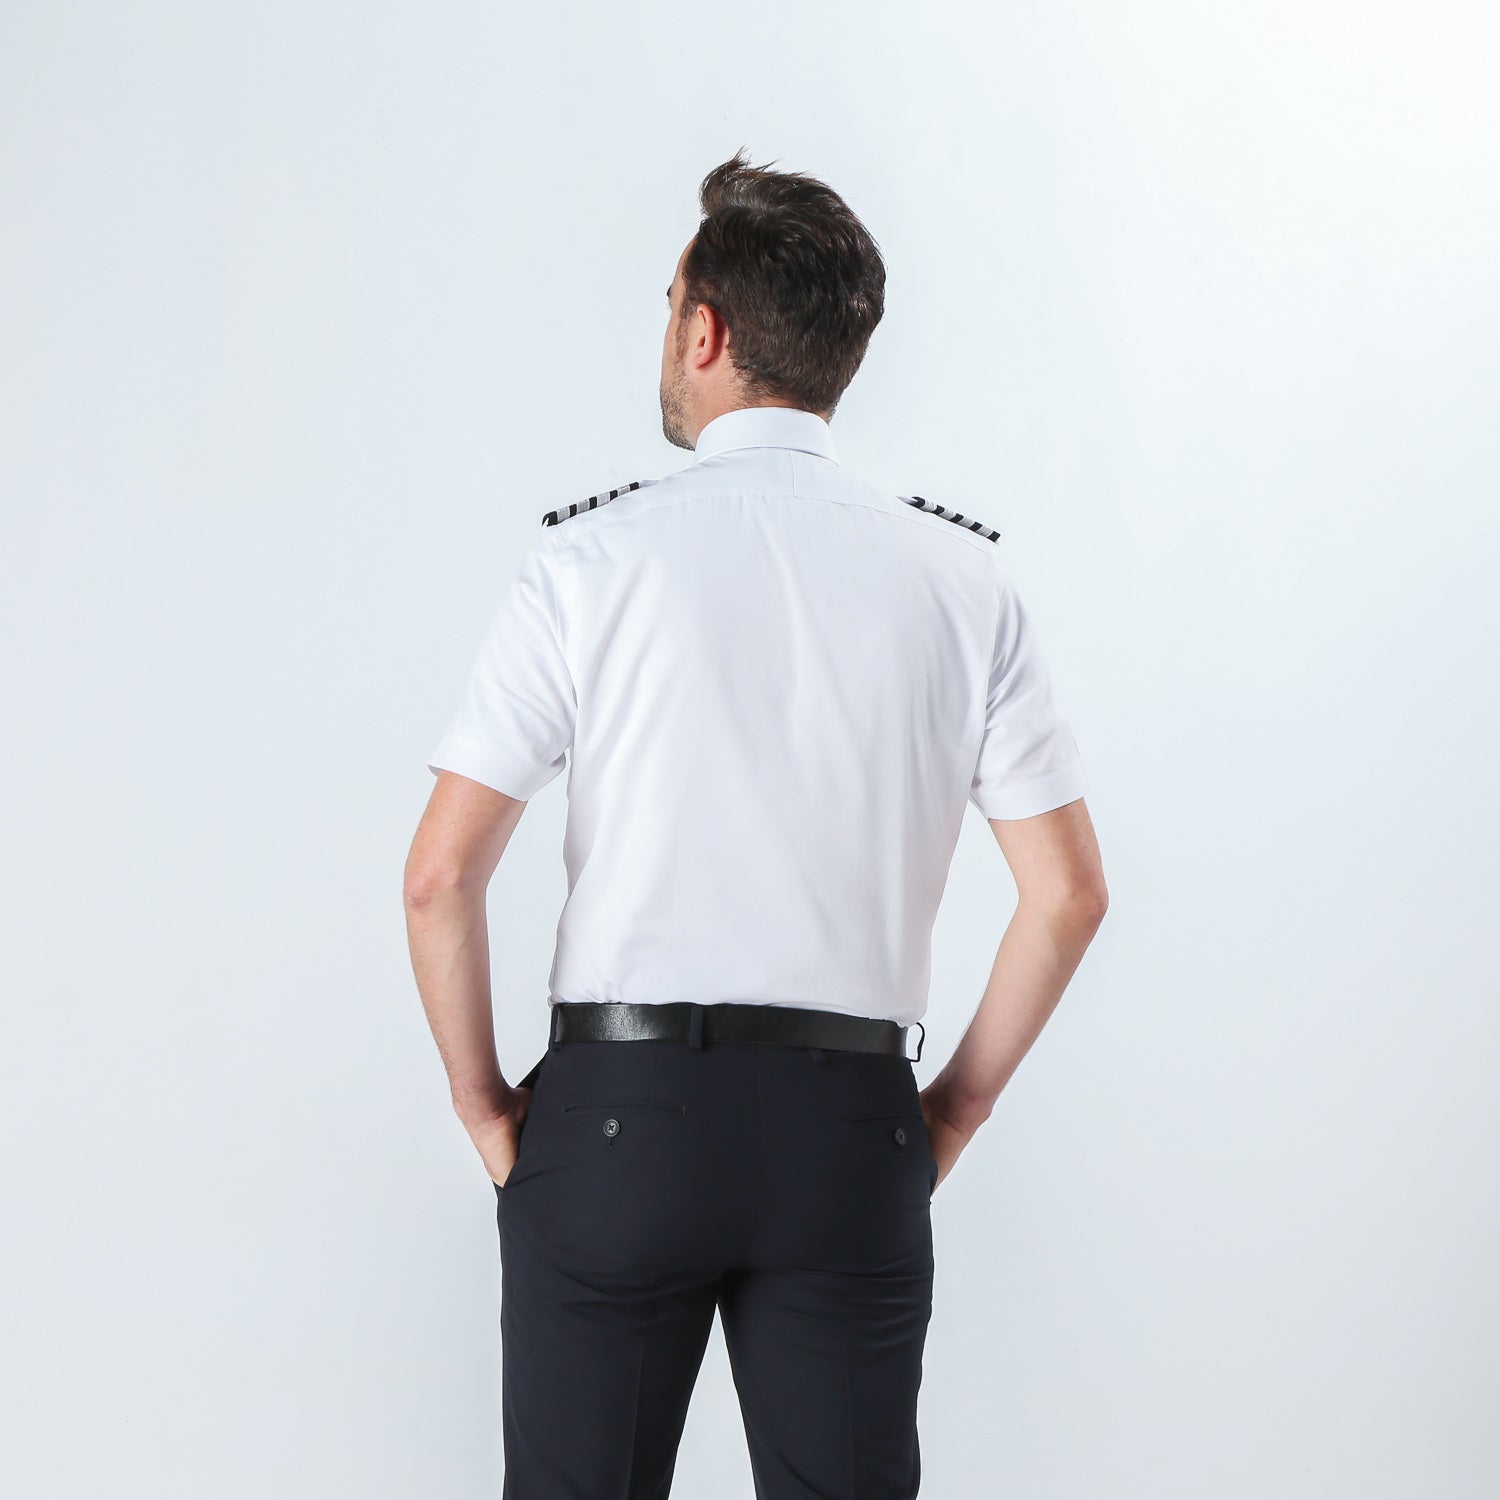 Pilot shirt fit rear